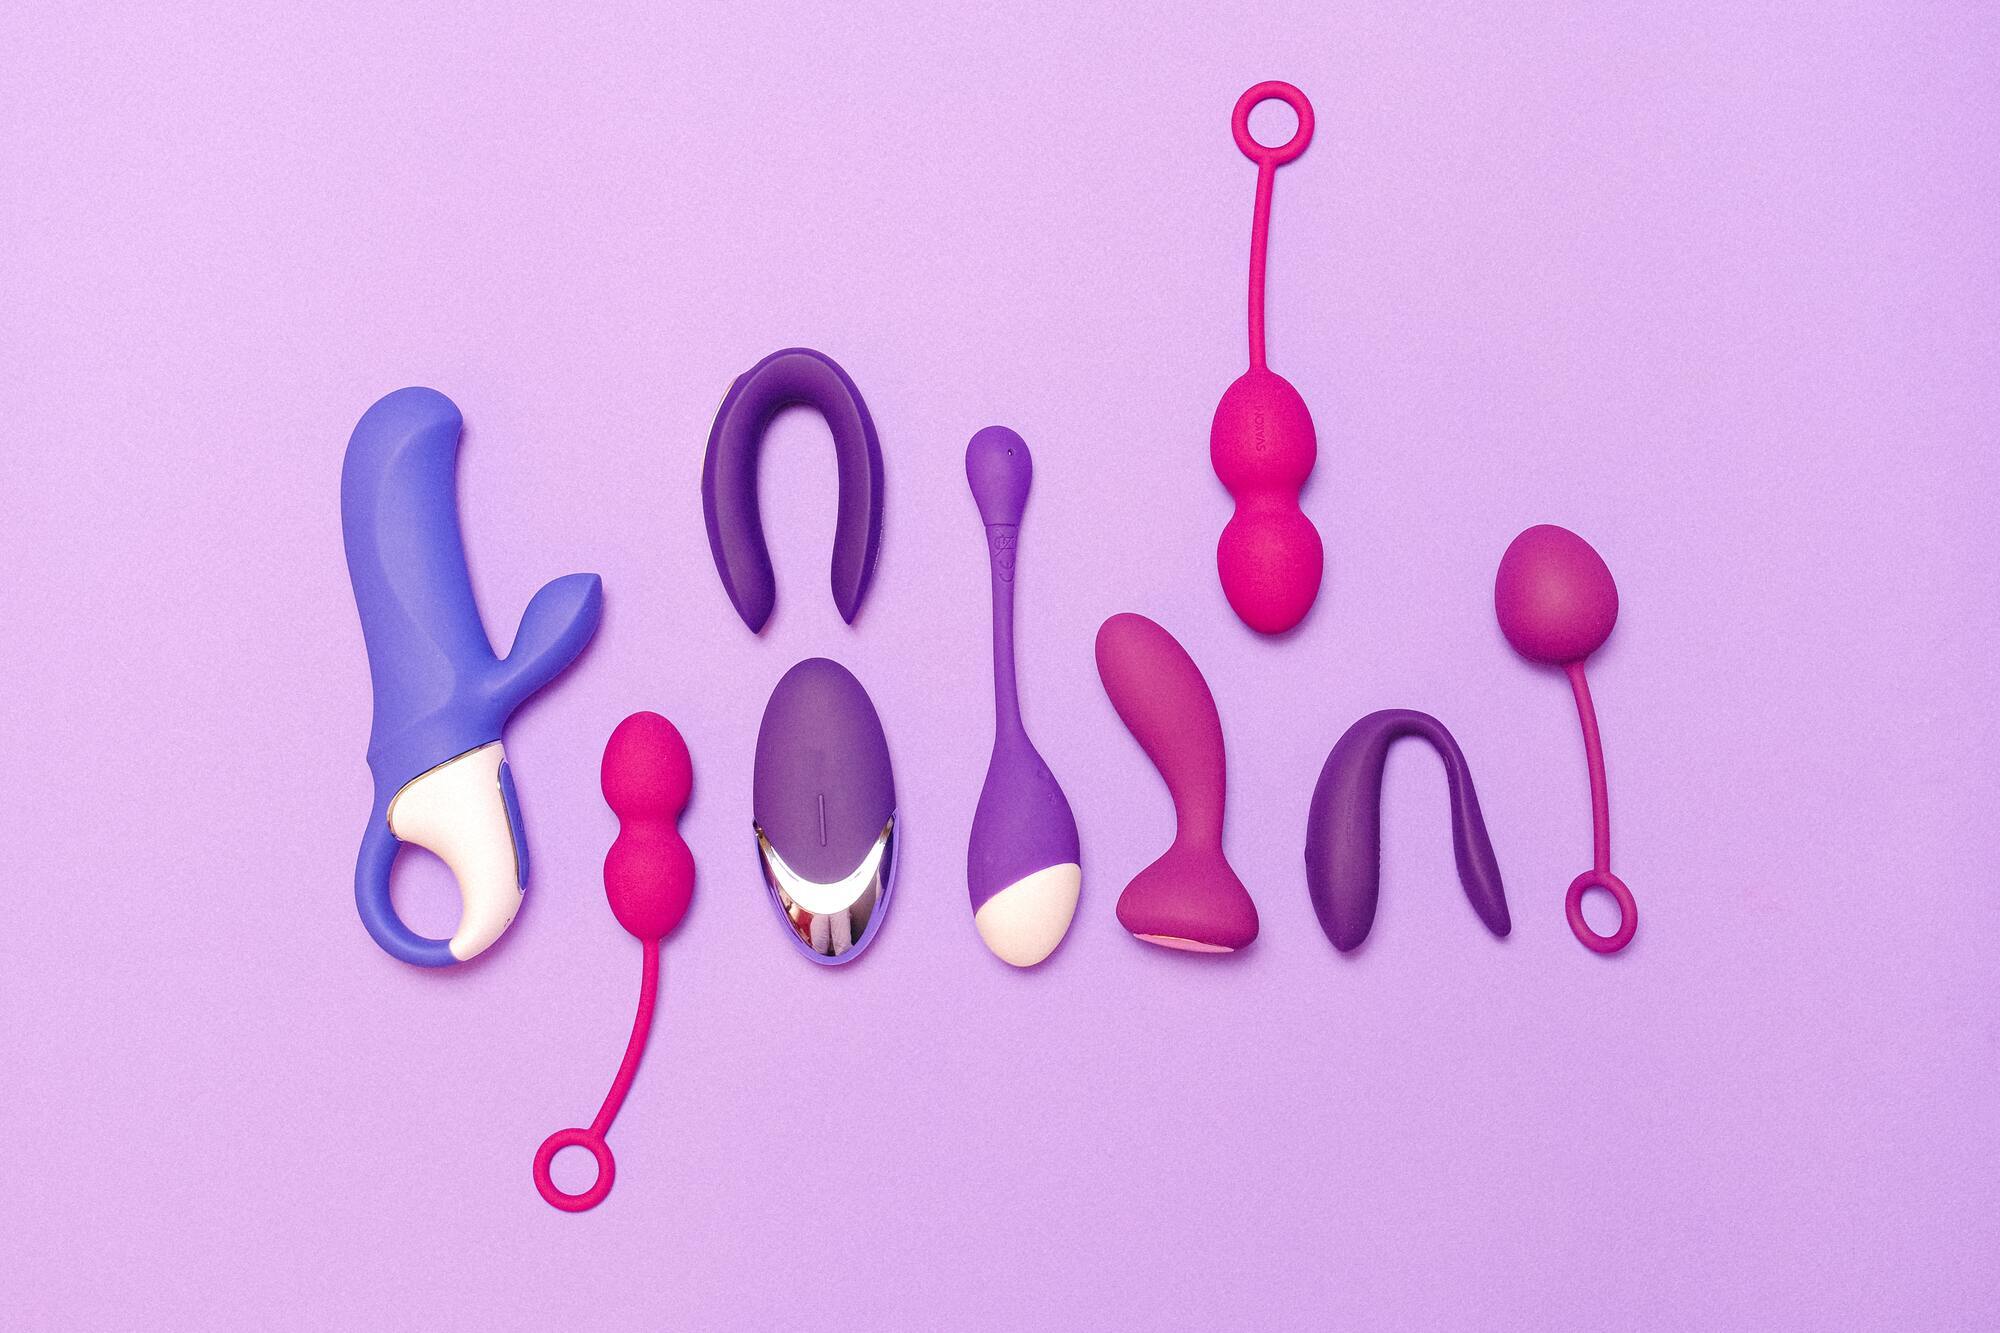 Наличие секс-игрушки никак не характеризует сексуальную жизнь человека